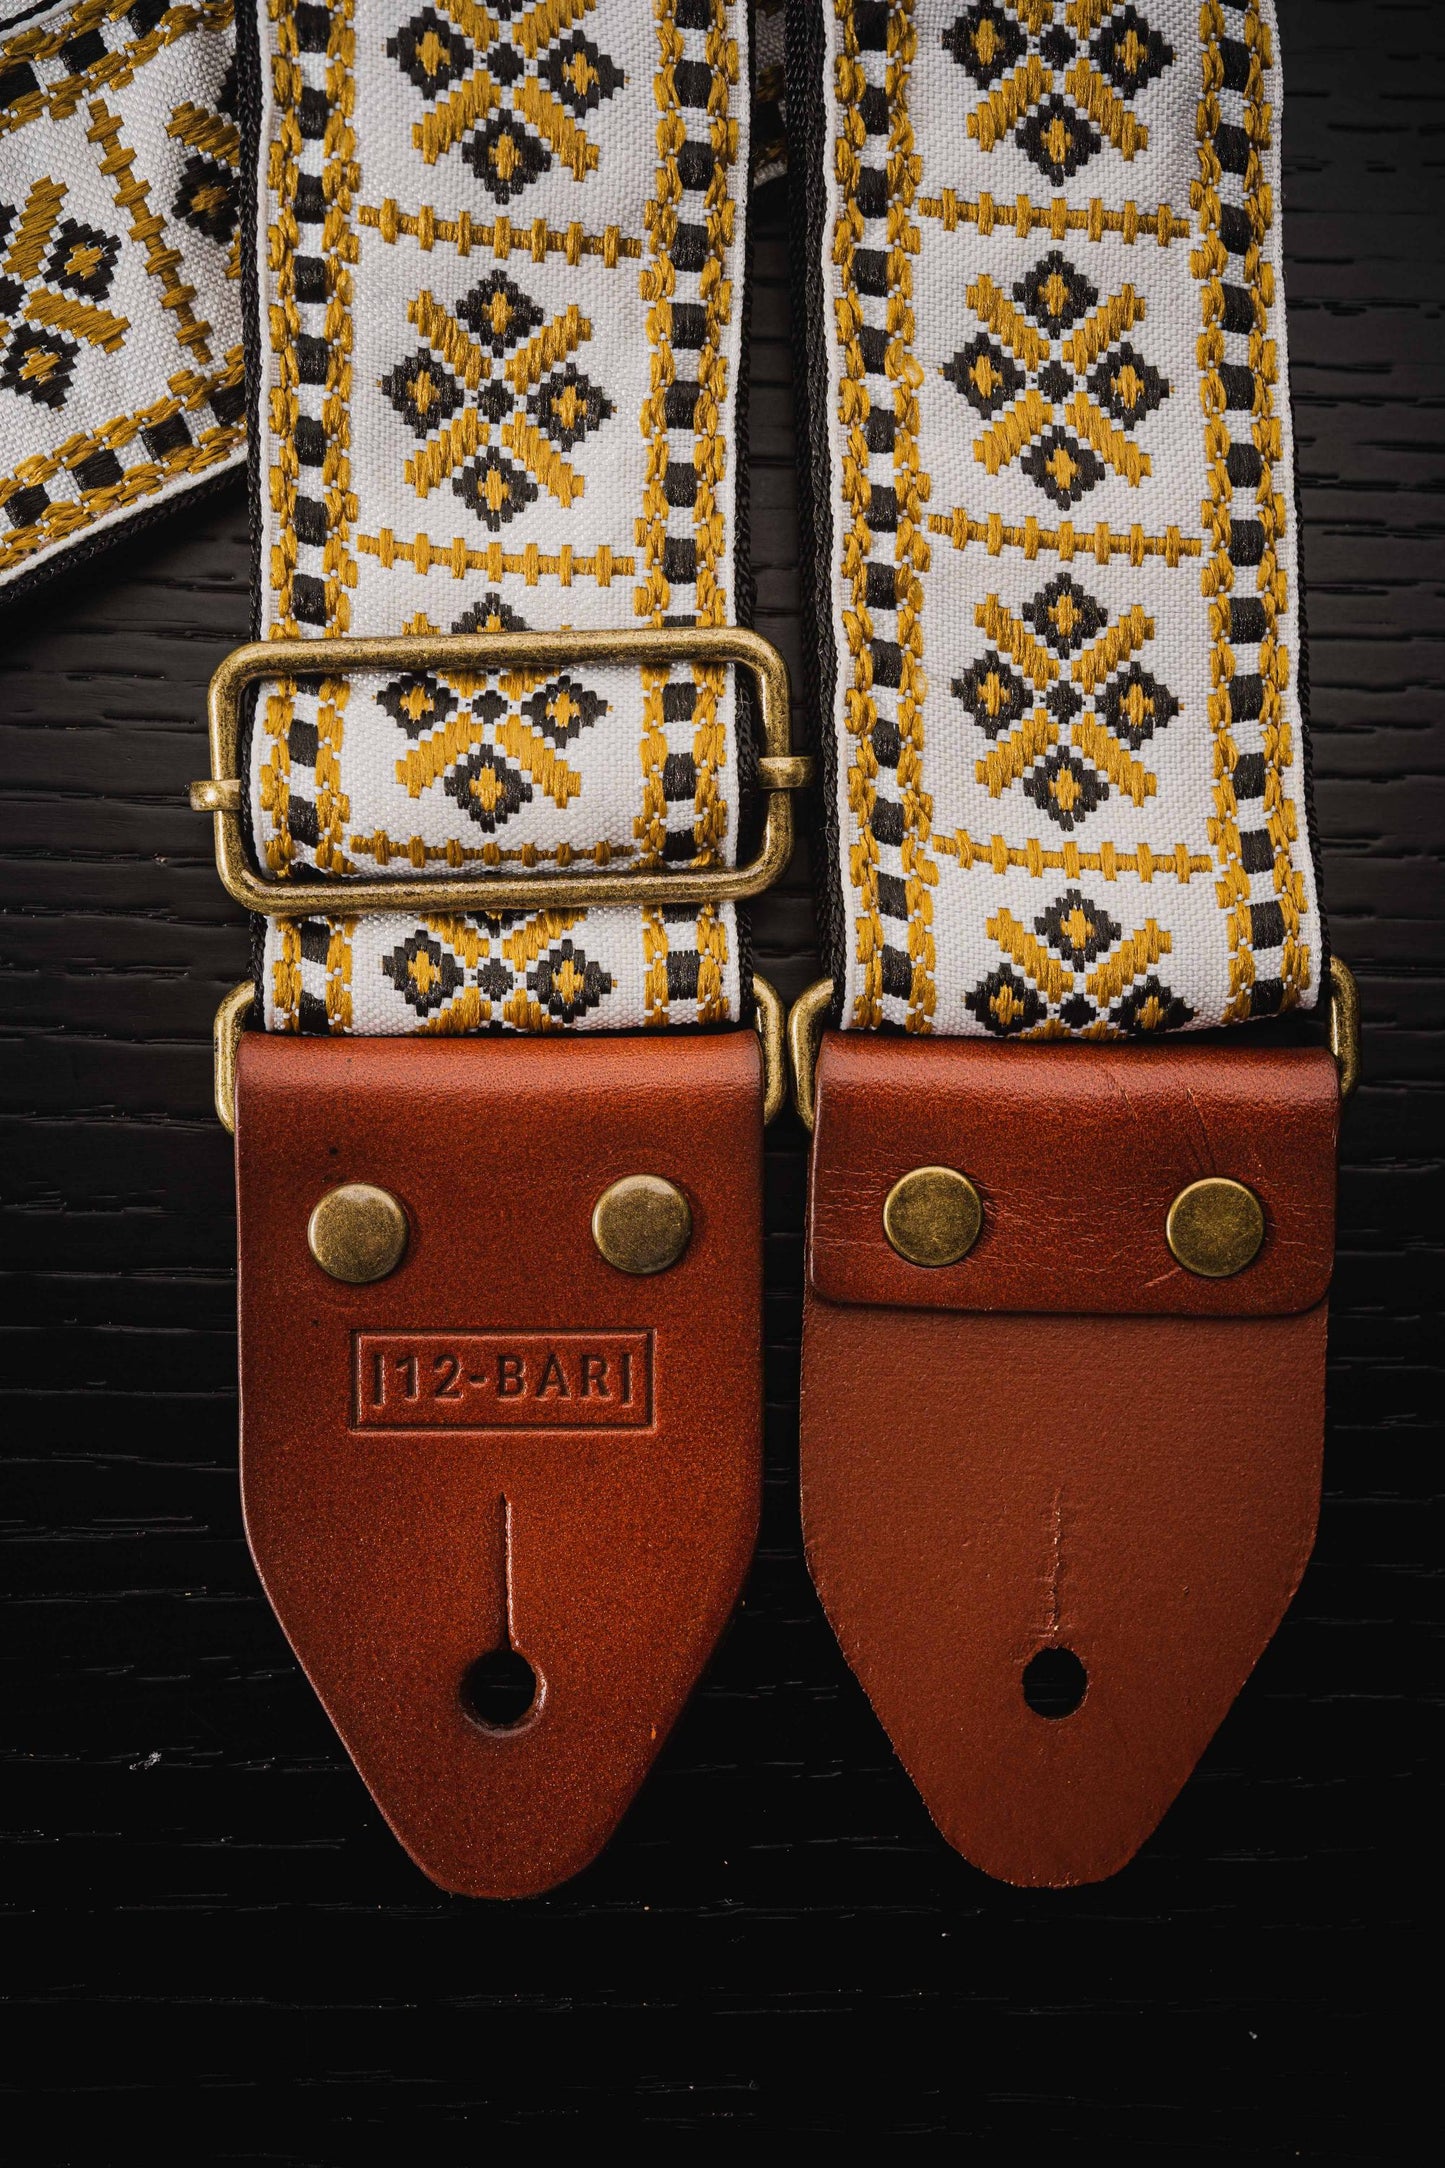 Aztec vintage retro guitar strap